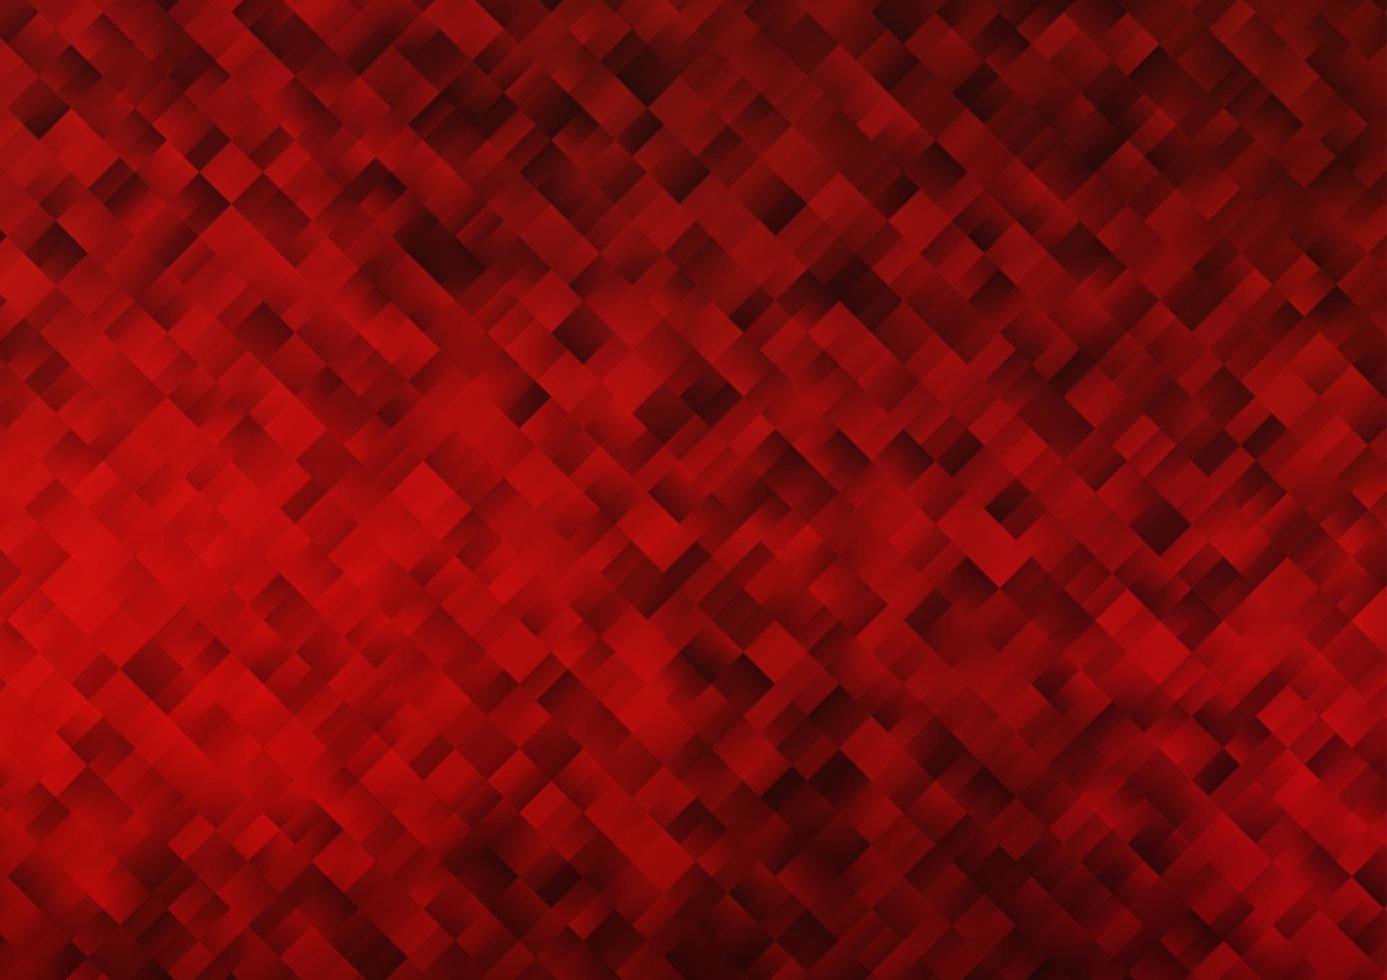 Telón de fondo de vector rojo claro con rectángulos, cuadrados.